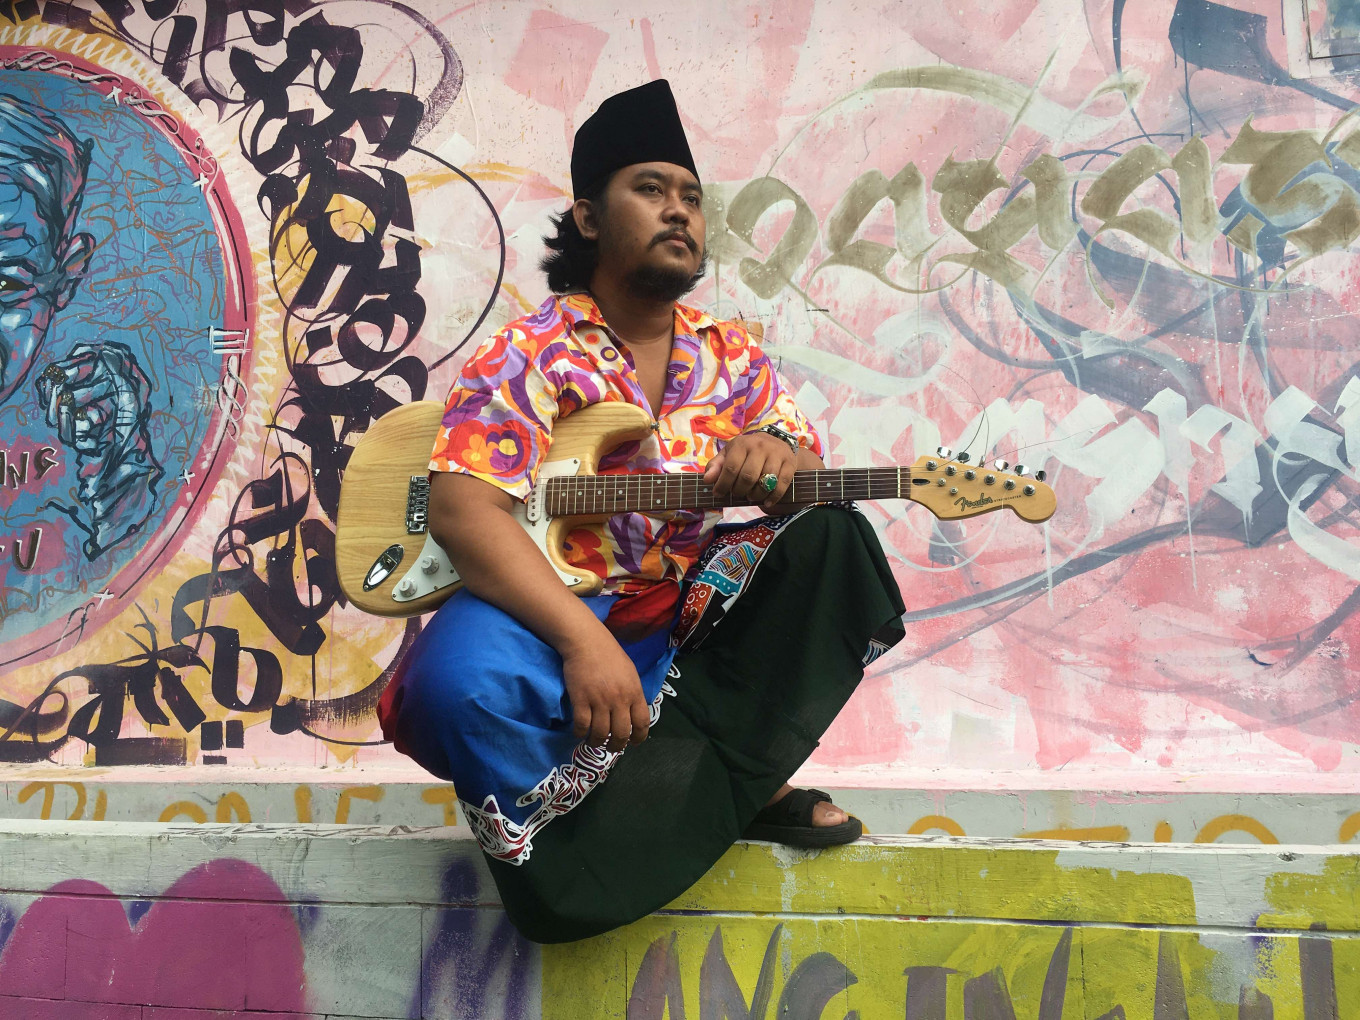 Gitar psychedelic, “kendhang” dan pantai Madura: Lorjhu berbicara tentang musiknya yang unik – Hiburan